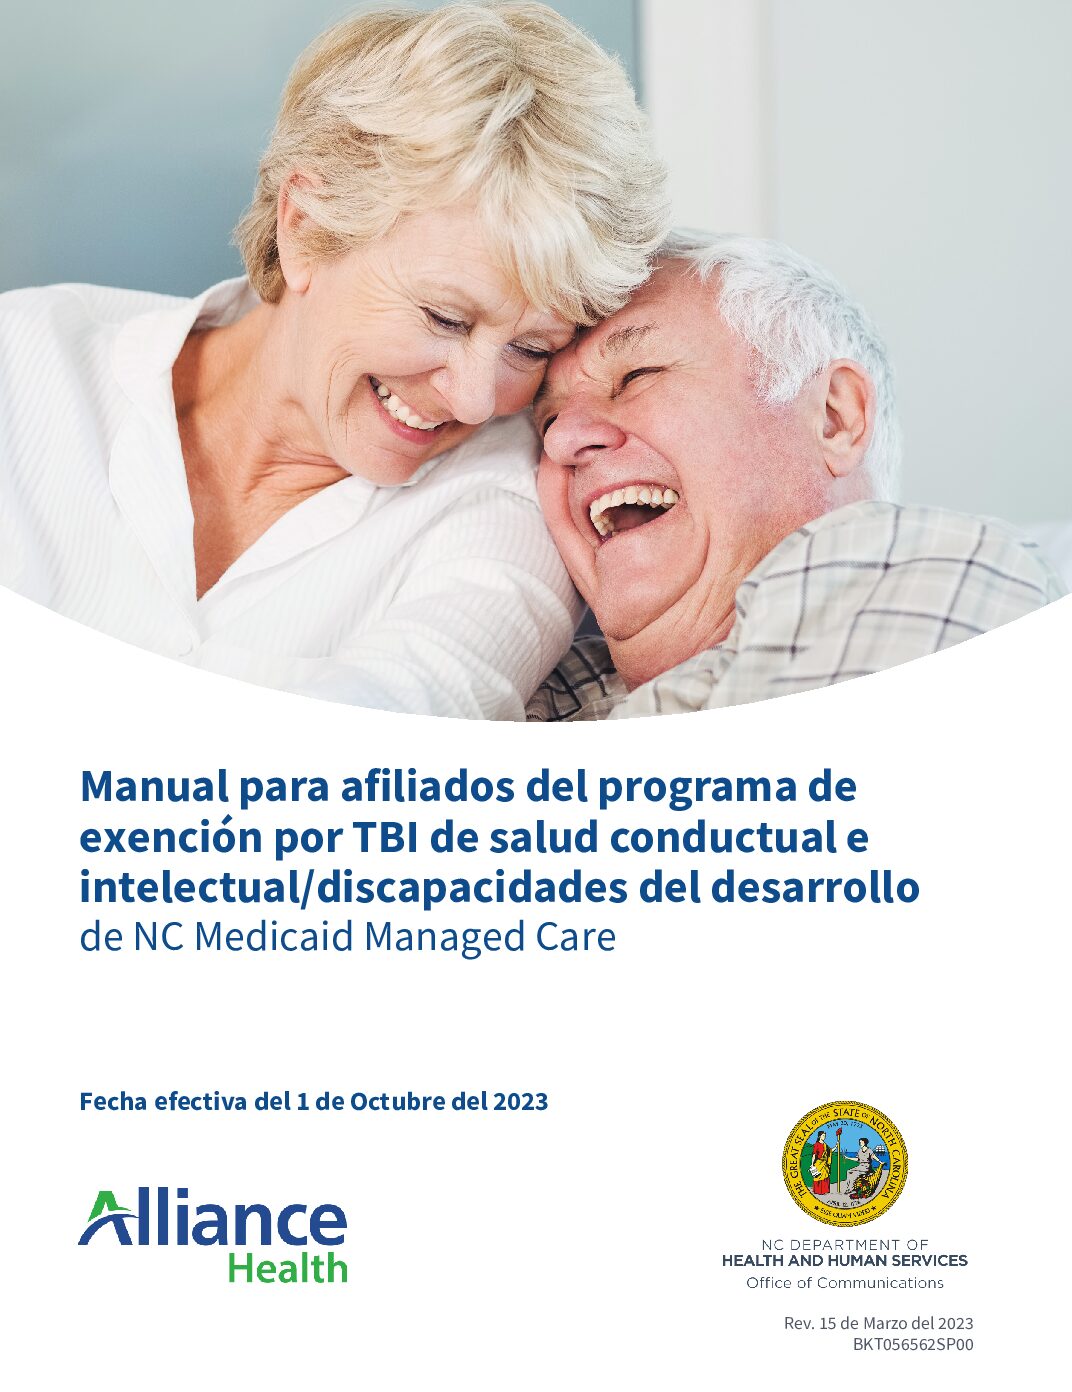 Manual para afiliados del programa de exención por TBI de salud conductual e intelectual/discapacidades del desarrollo de NC Medicaid Managed Care